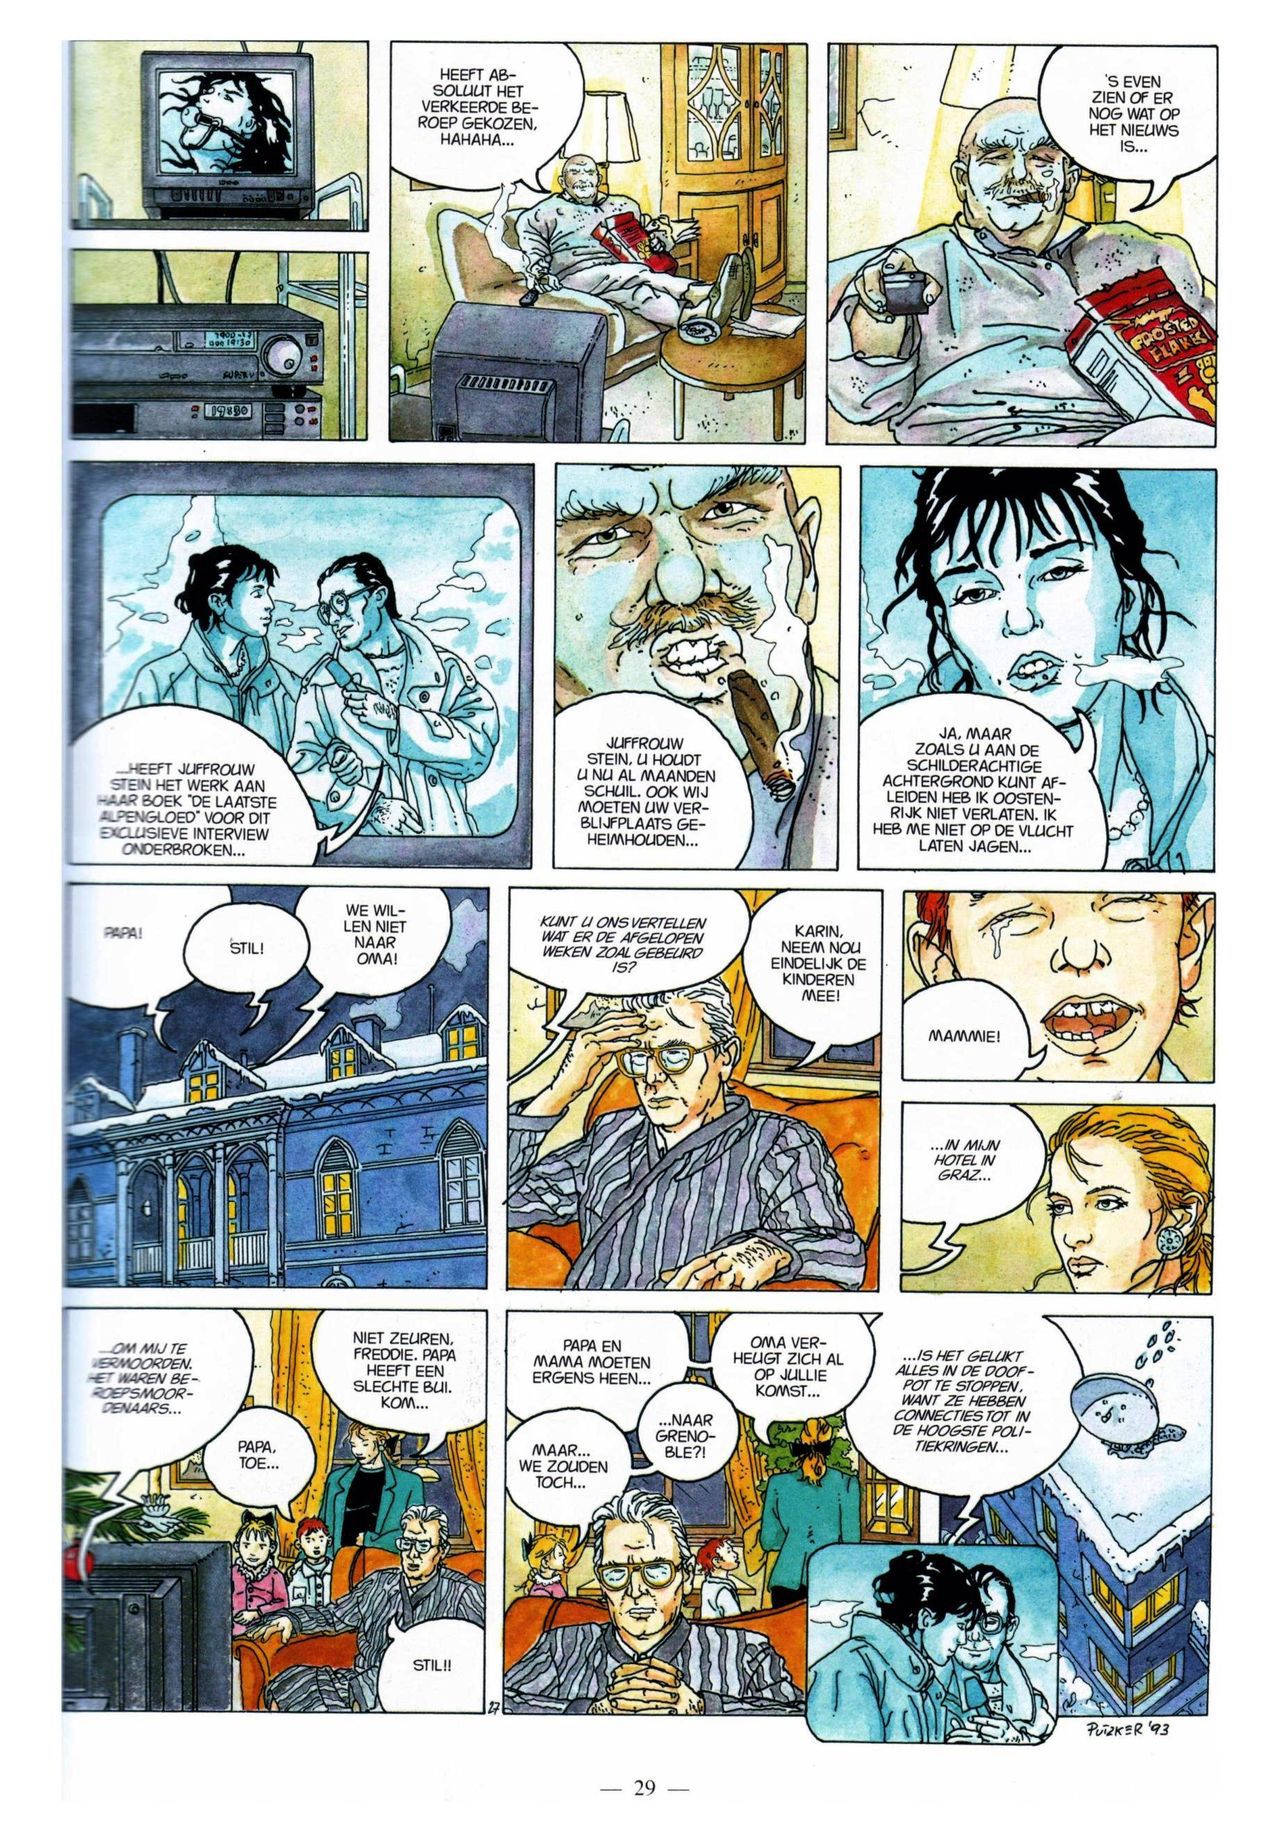 Anna Stein - 03 - De Laatste Alpengloed (Dutch) Engelstalige strips die op deze site staan, hier is de Nederlandse uitgave! 29